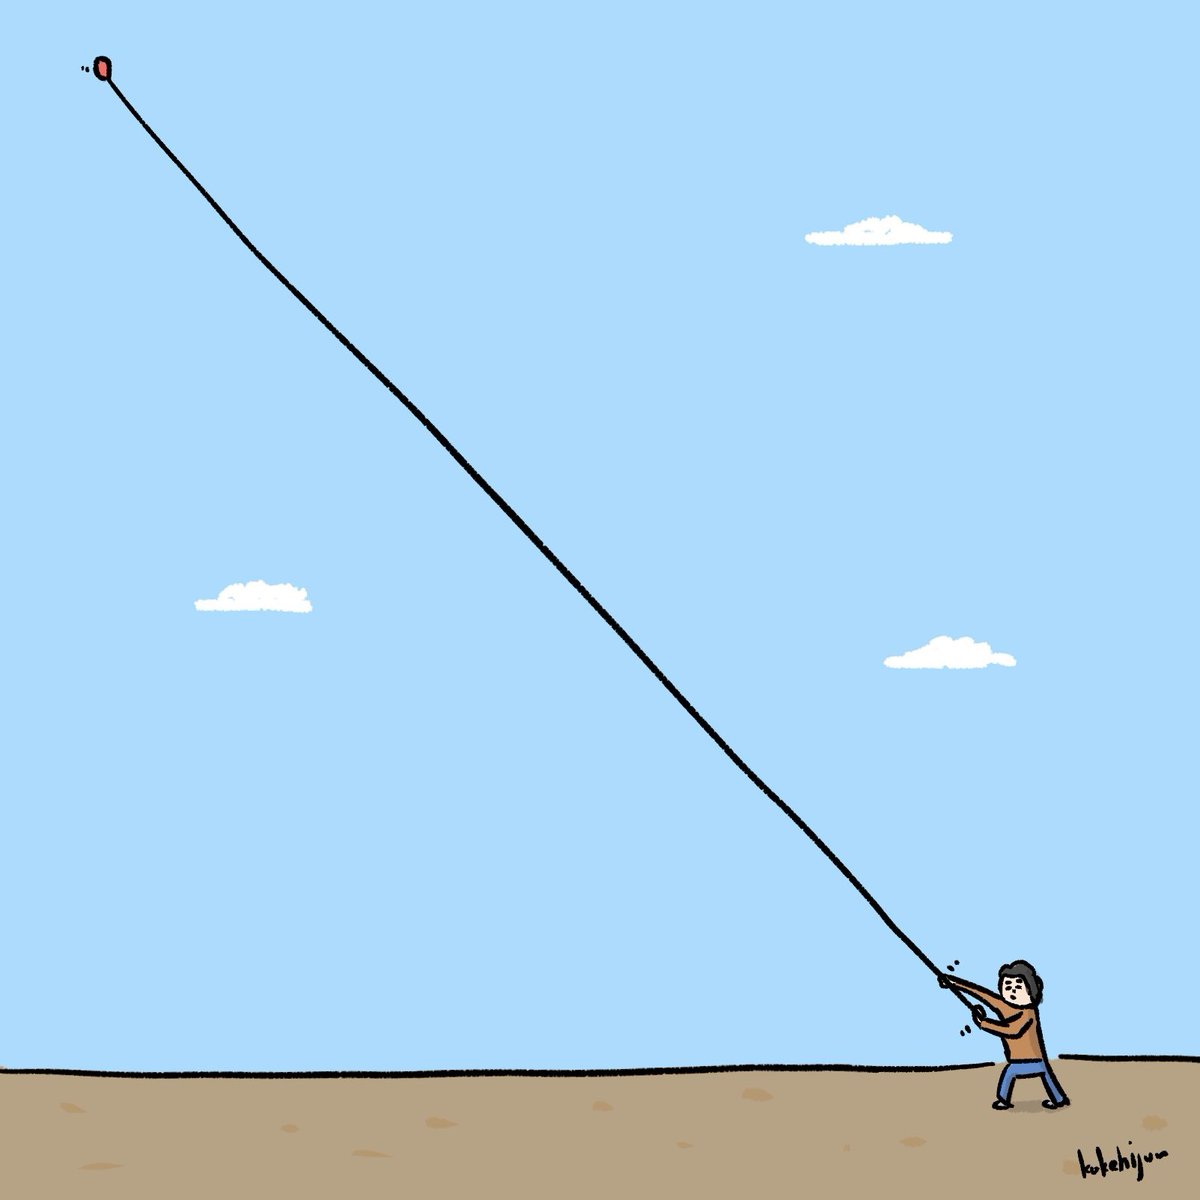 「凧みたいに風船を飛ばす人」|カケヒジュン@イラストレーターのイラスト